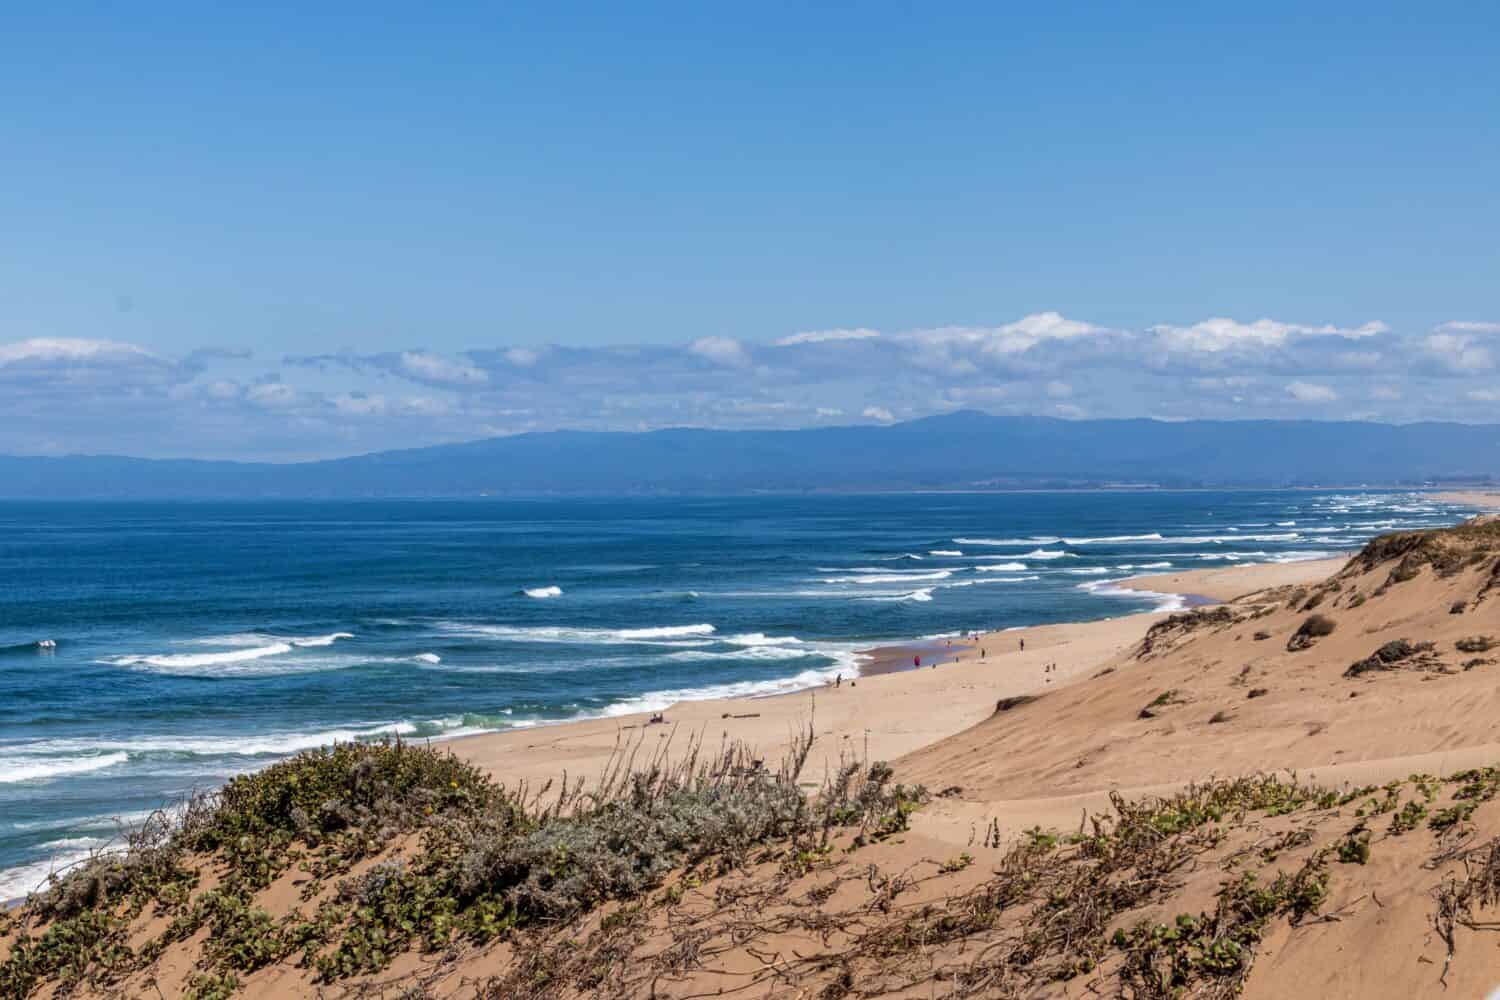 Vista della baia di Monterey dall'alto delle dune